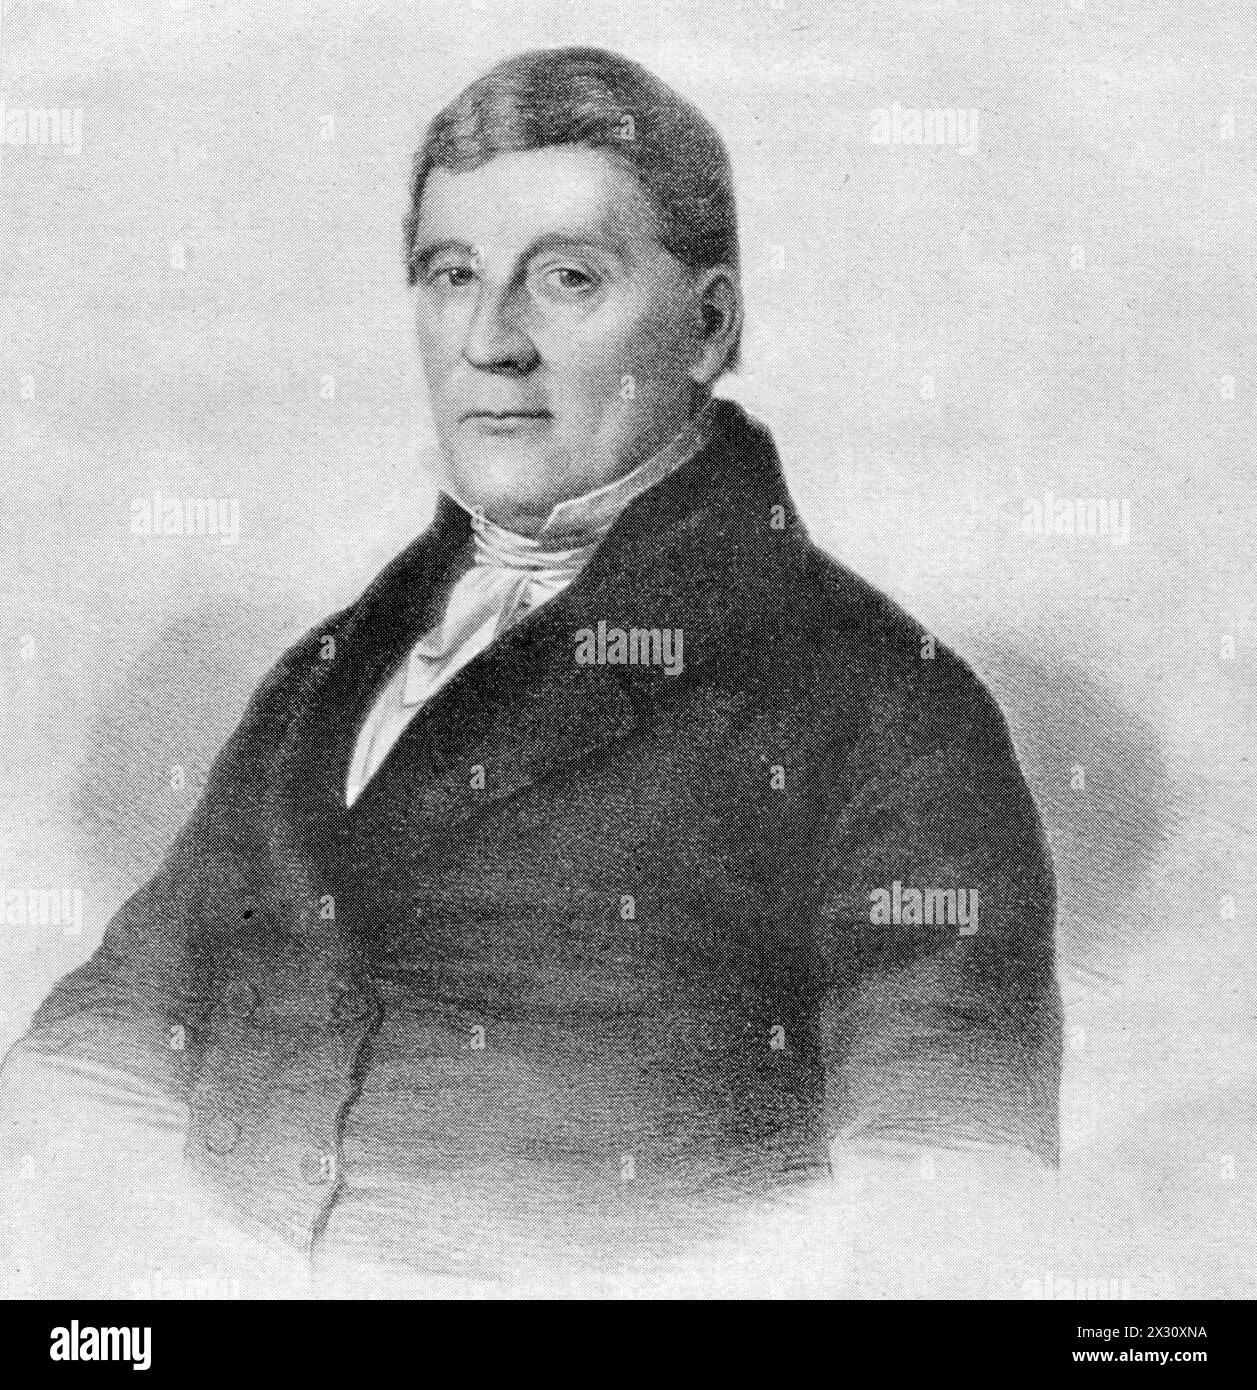 Spohr, Ludwig, 5.4.1784 - 22,10 1859, compositeur et chef d'orchestre allemand, AUTORISATION-DROITS-SUPPLÉMENTAIRES-INFO-NON-DISPONIBLE Banque D'Images